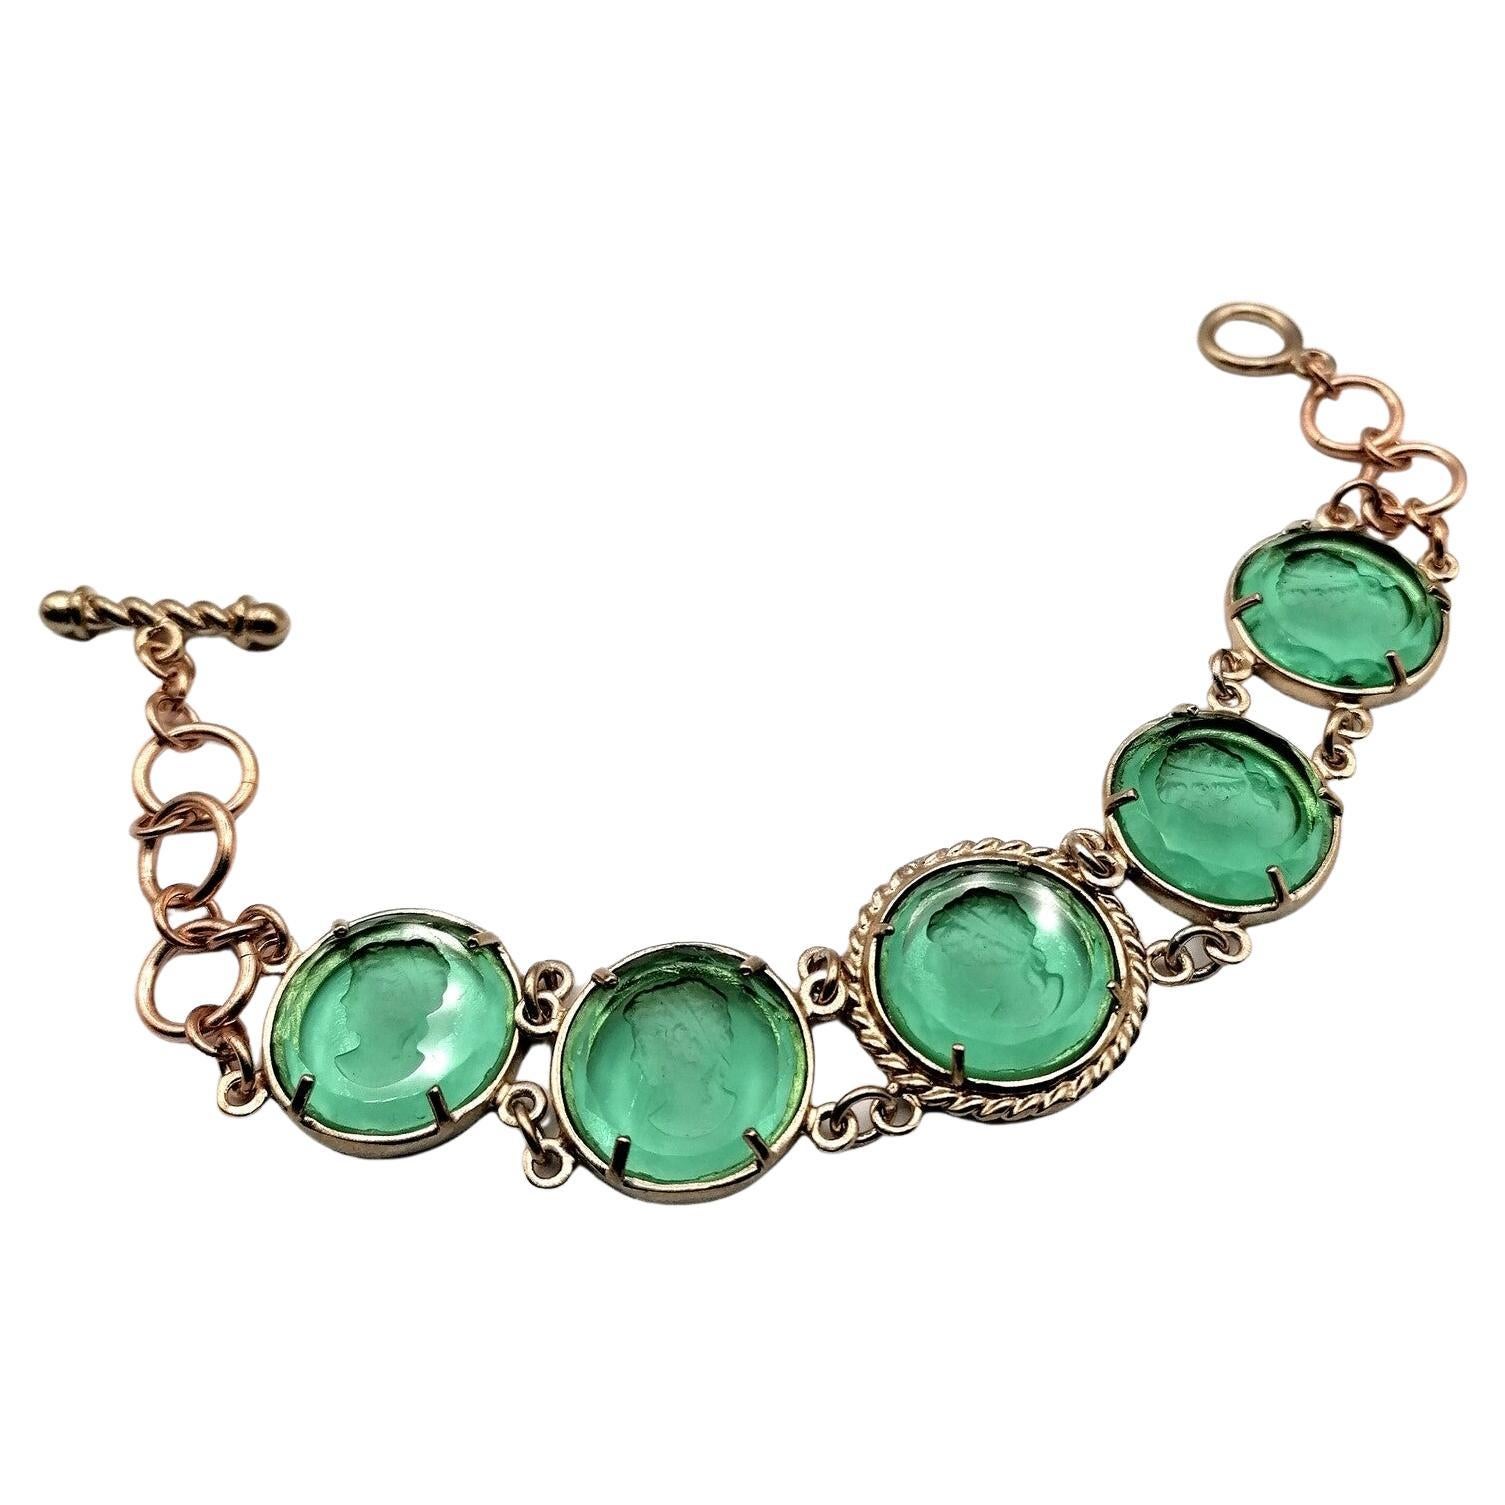 Emerald Green Bracelet in Pure Bronze and Murano Glass by Patrizia Daliana